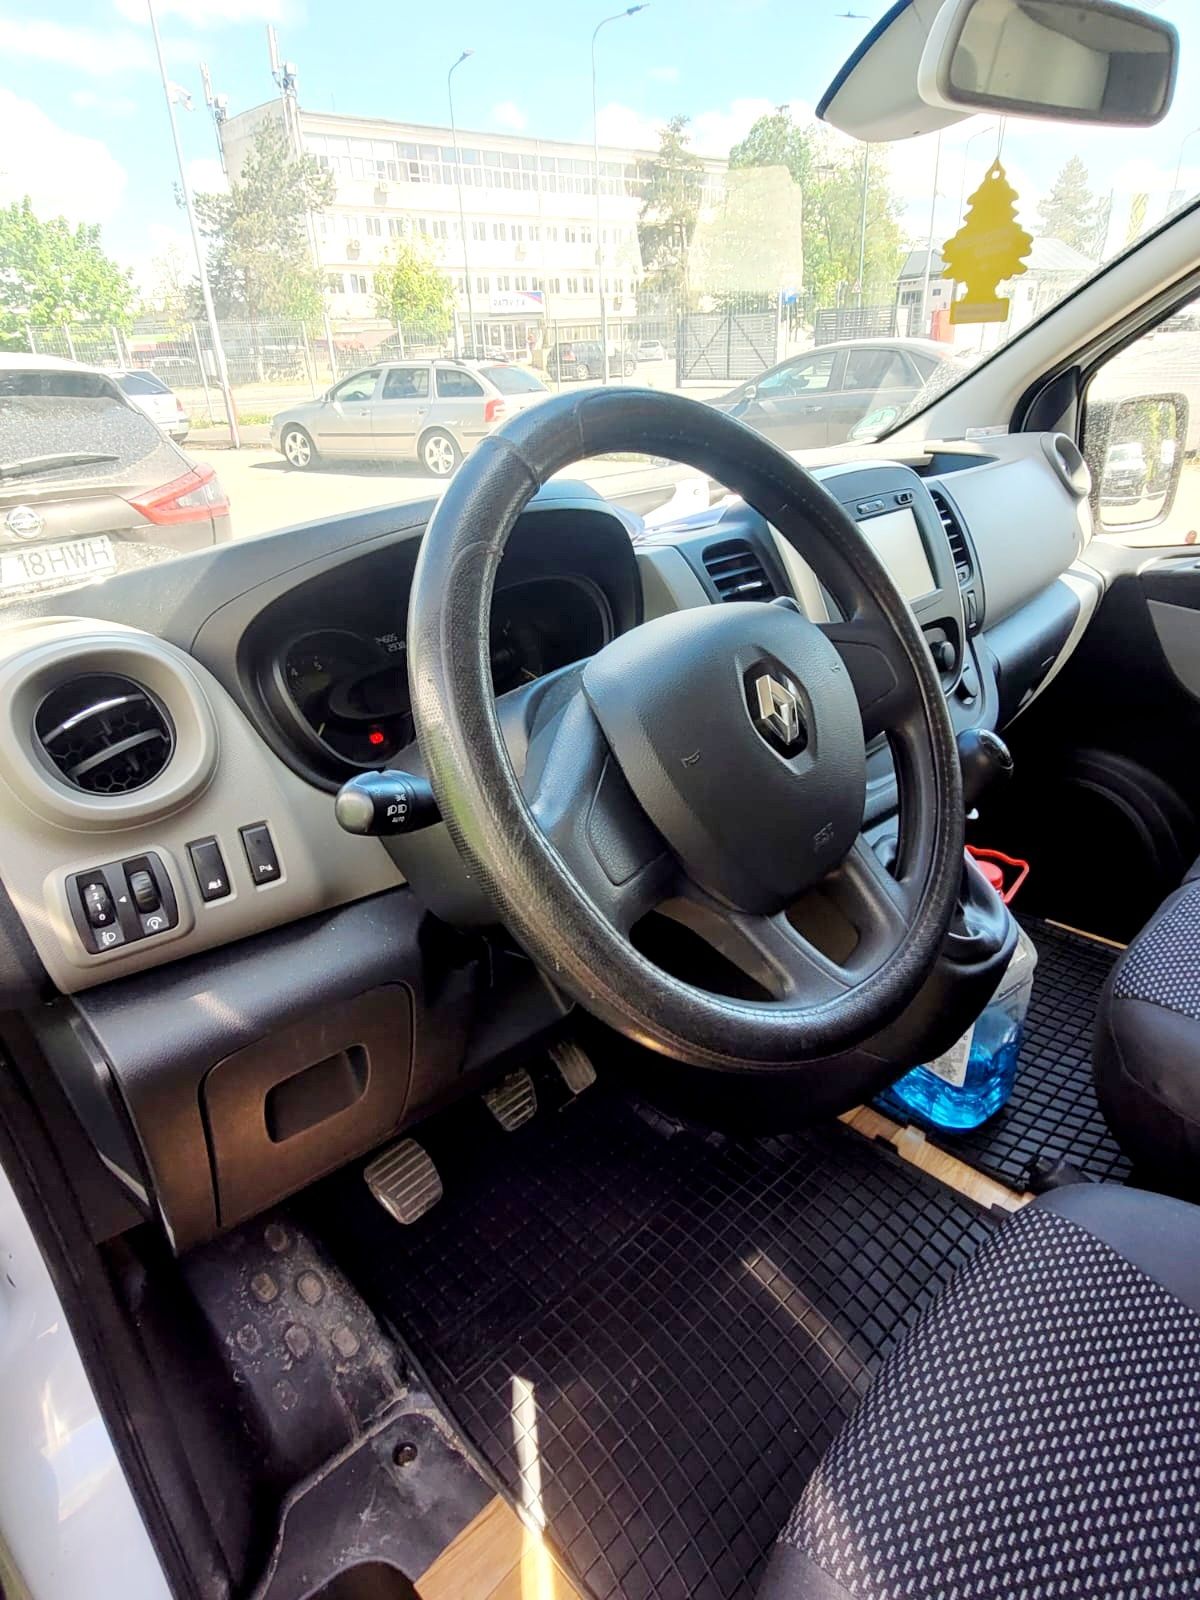 Renault trafic 2015 sau schimb cu mașina frigorifica